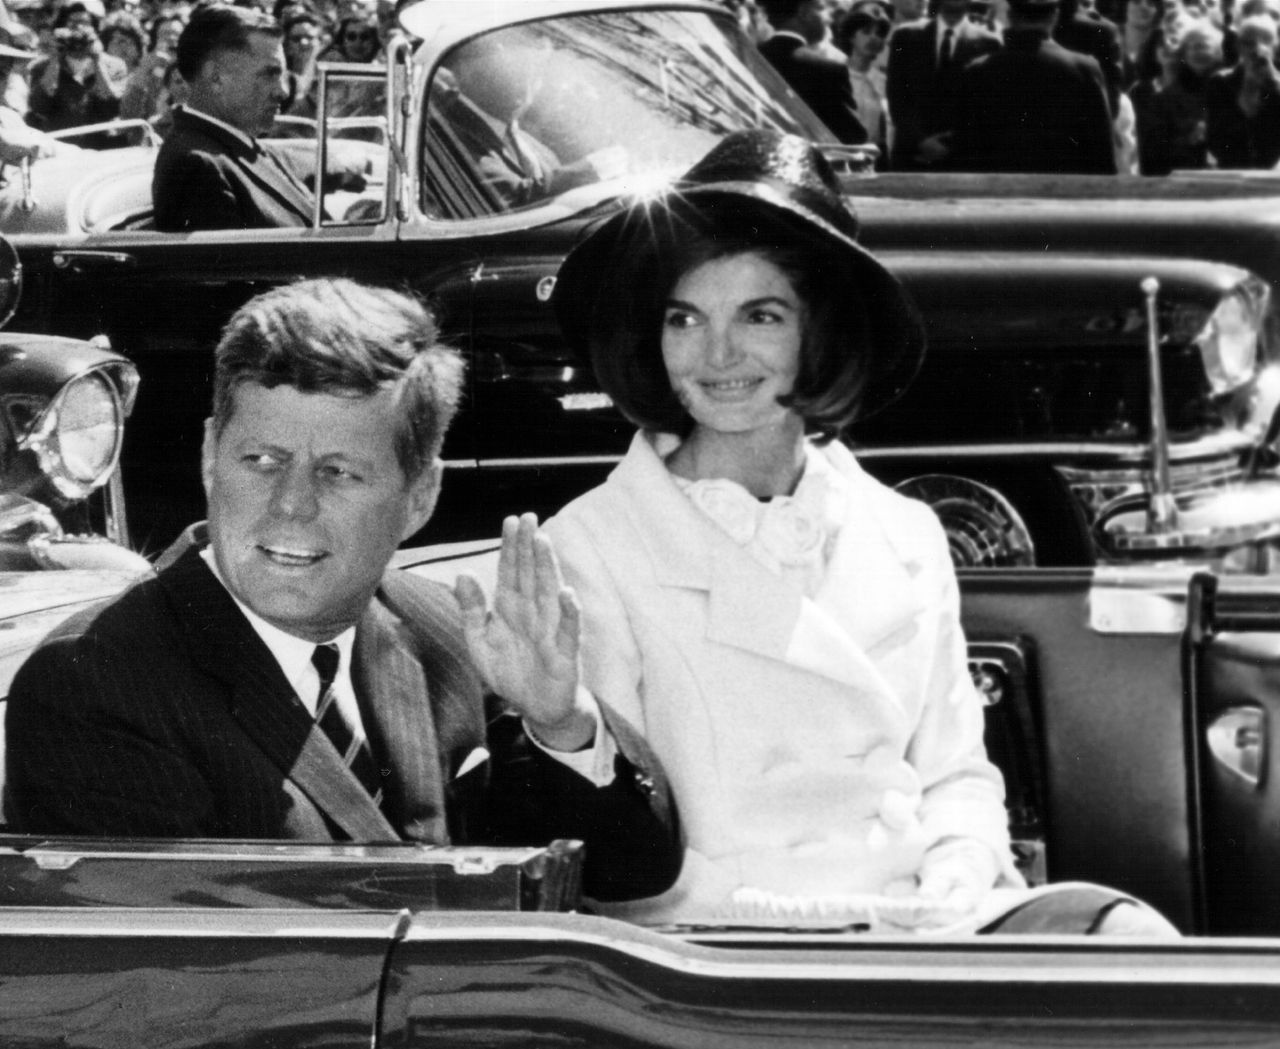 John i Jackie Kennedy w 1963 roku 